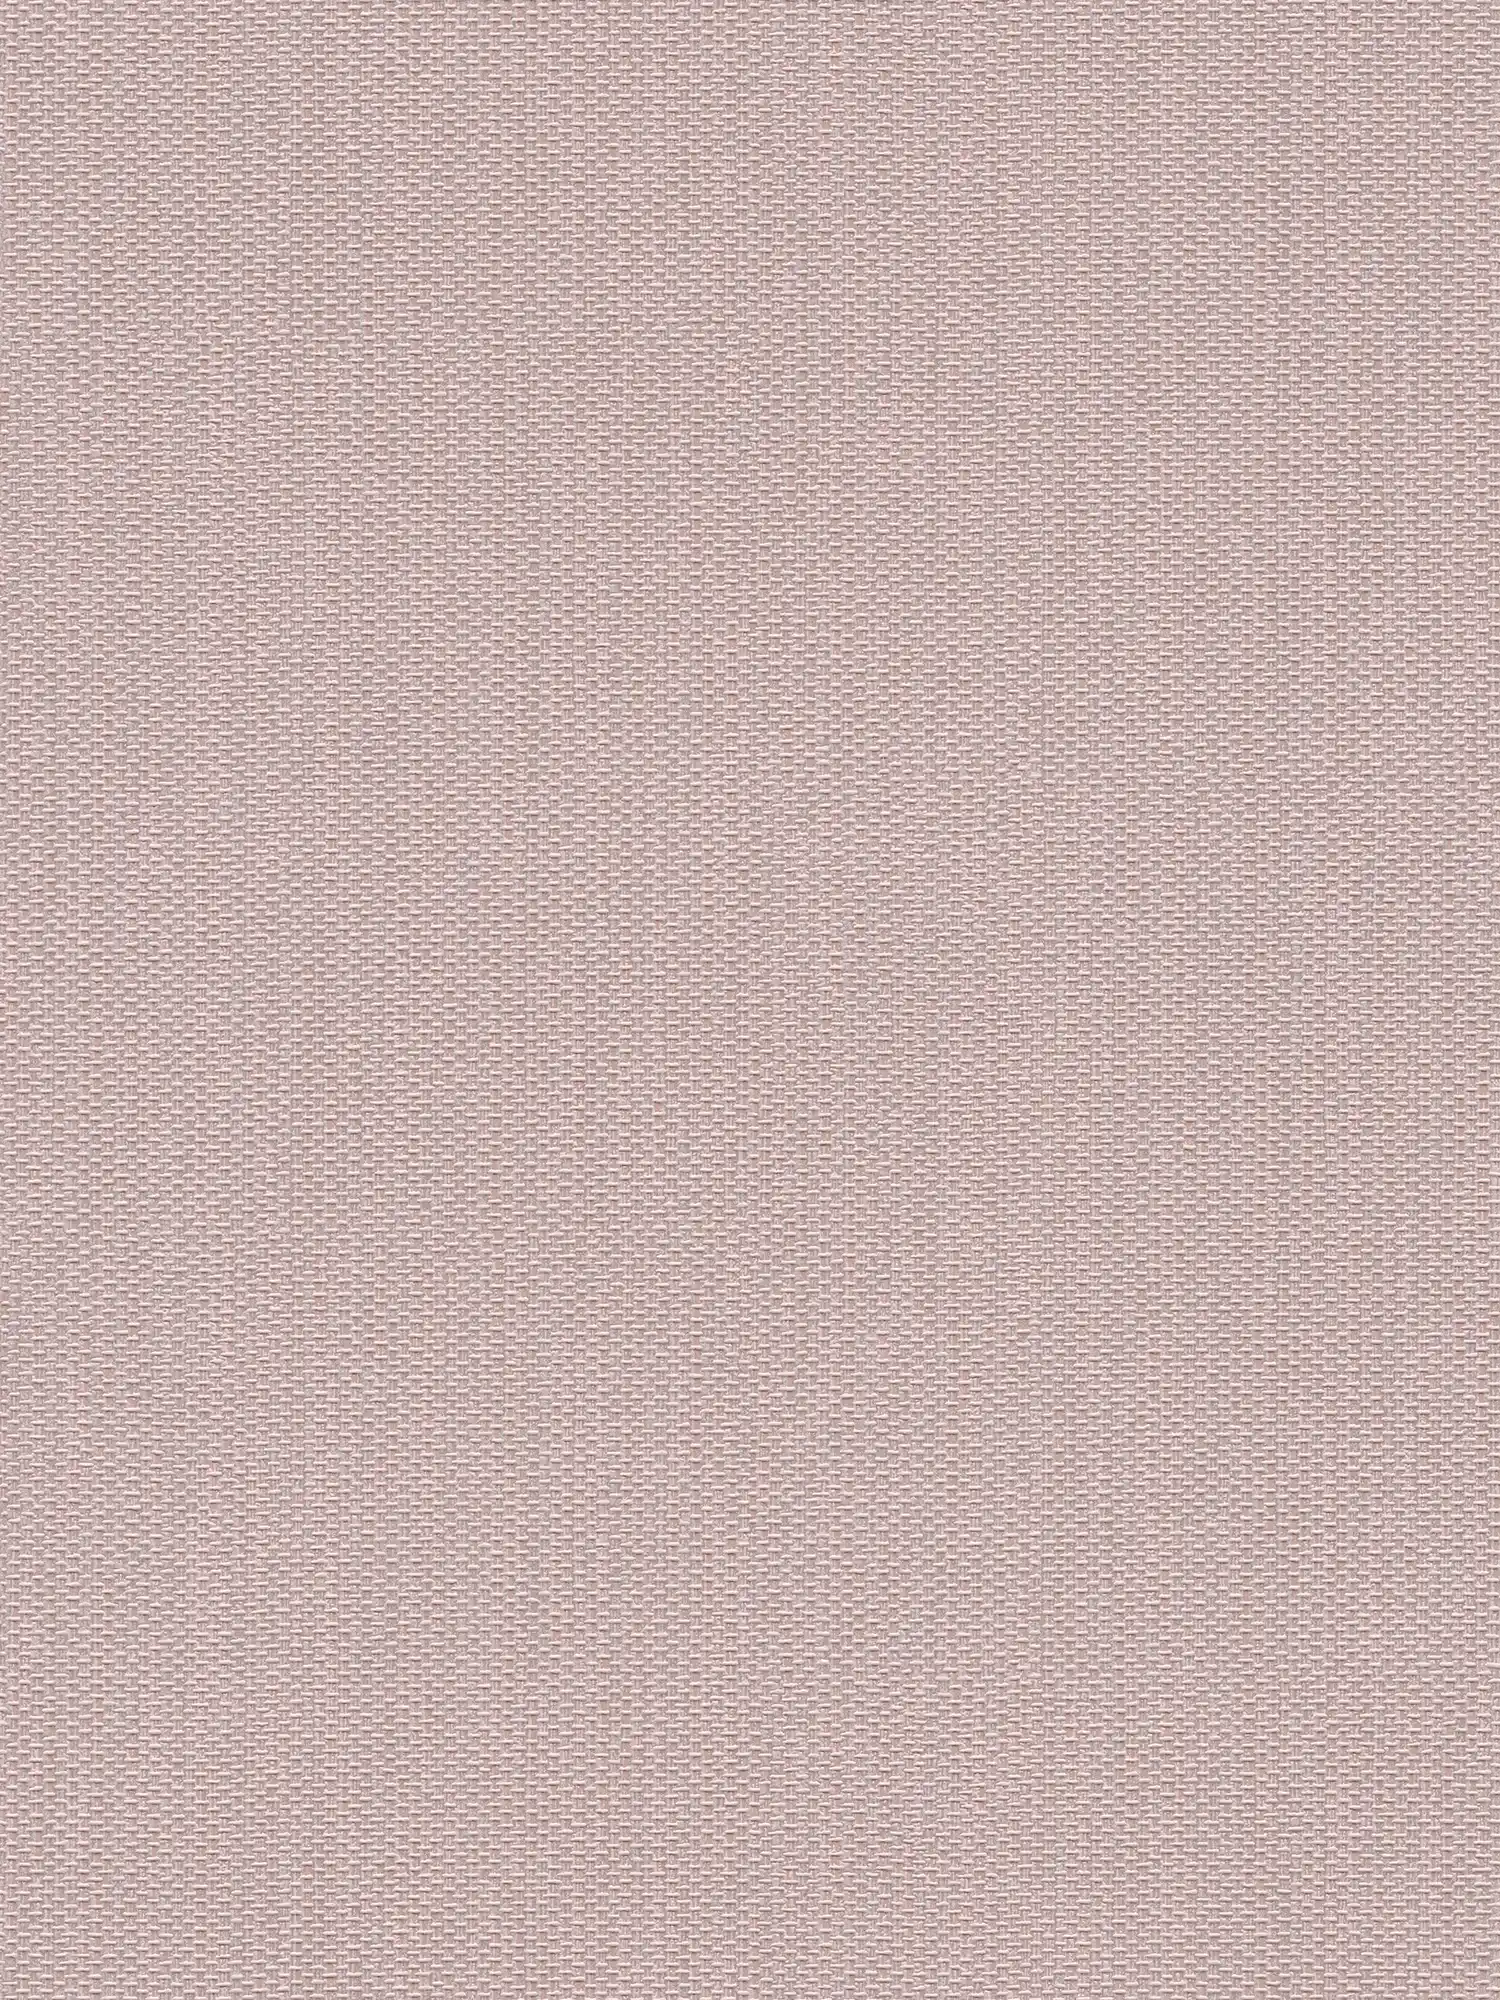 papier peint en papier intissé structuré aspect textile - rose, argenté
